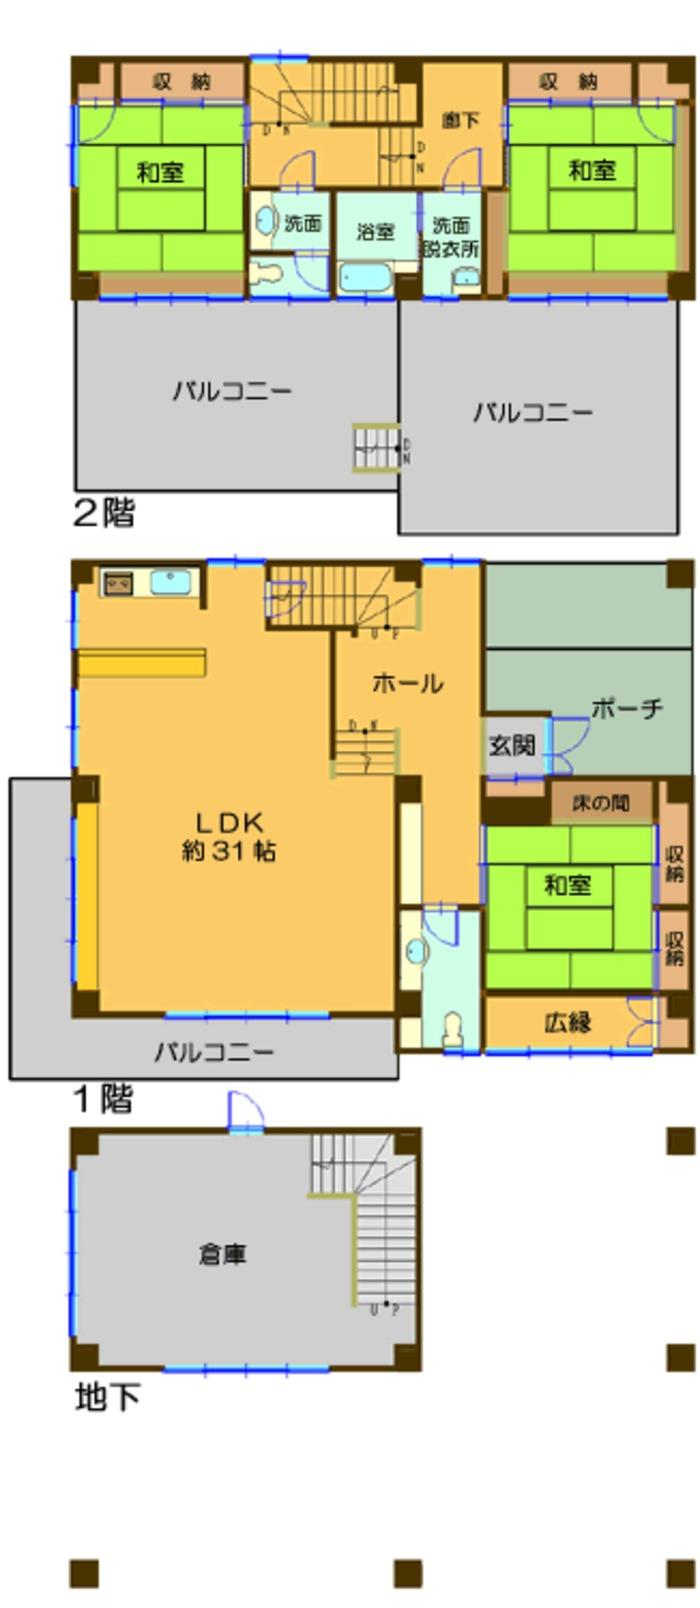 Floor plan. 22.5 million yen, 4LDK, Land area 1,575 sq m , Building area 201.43 sq m